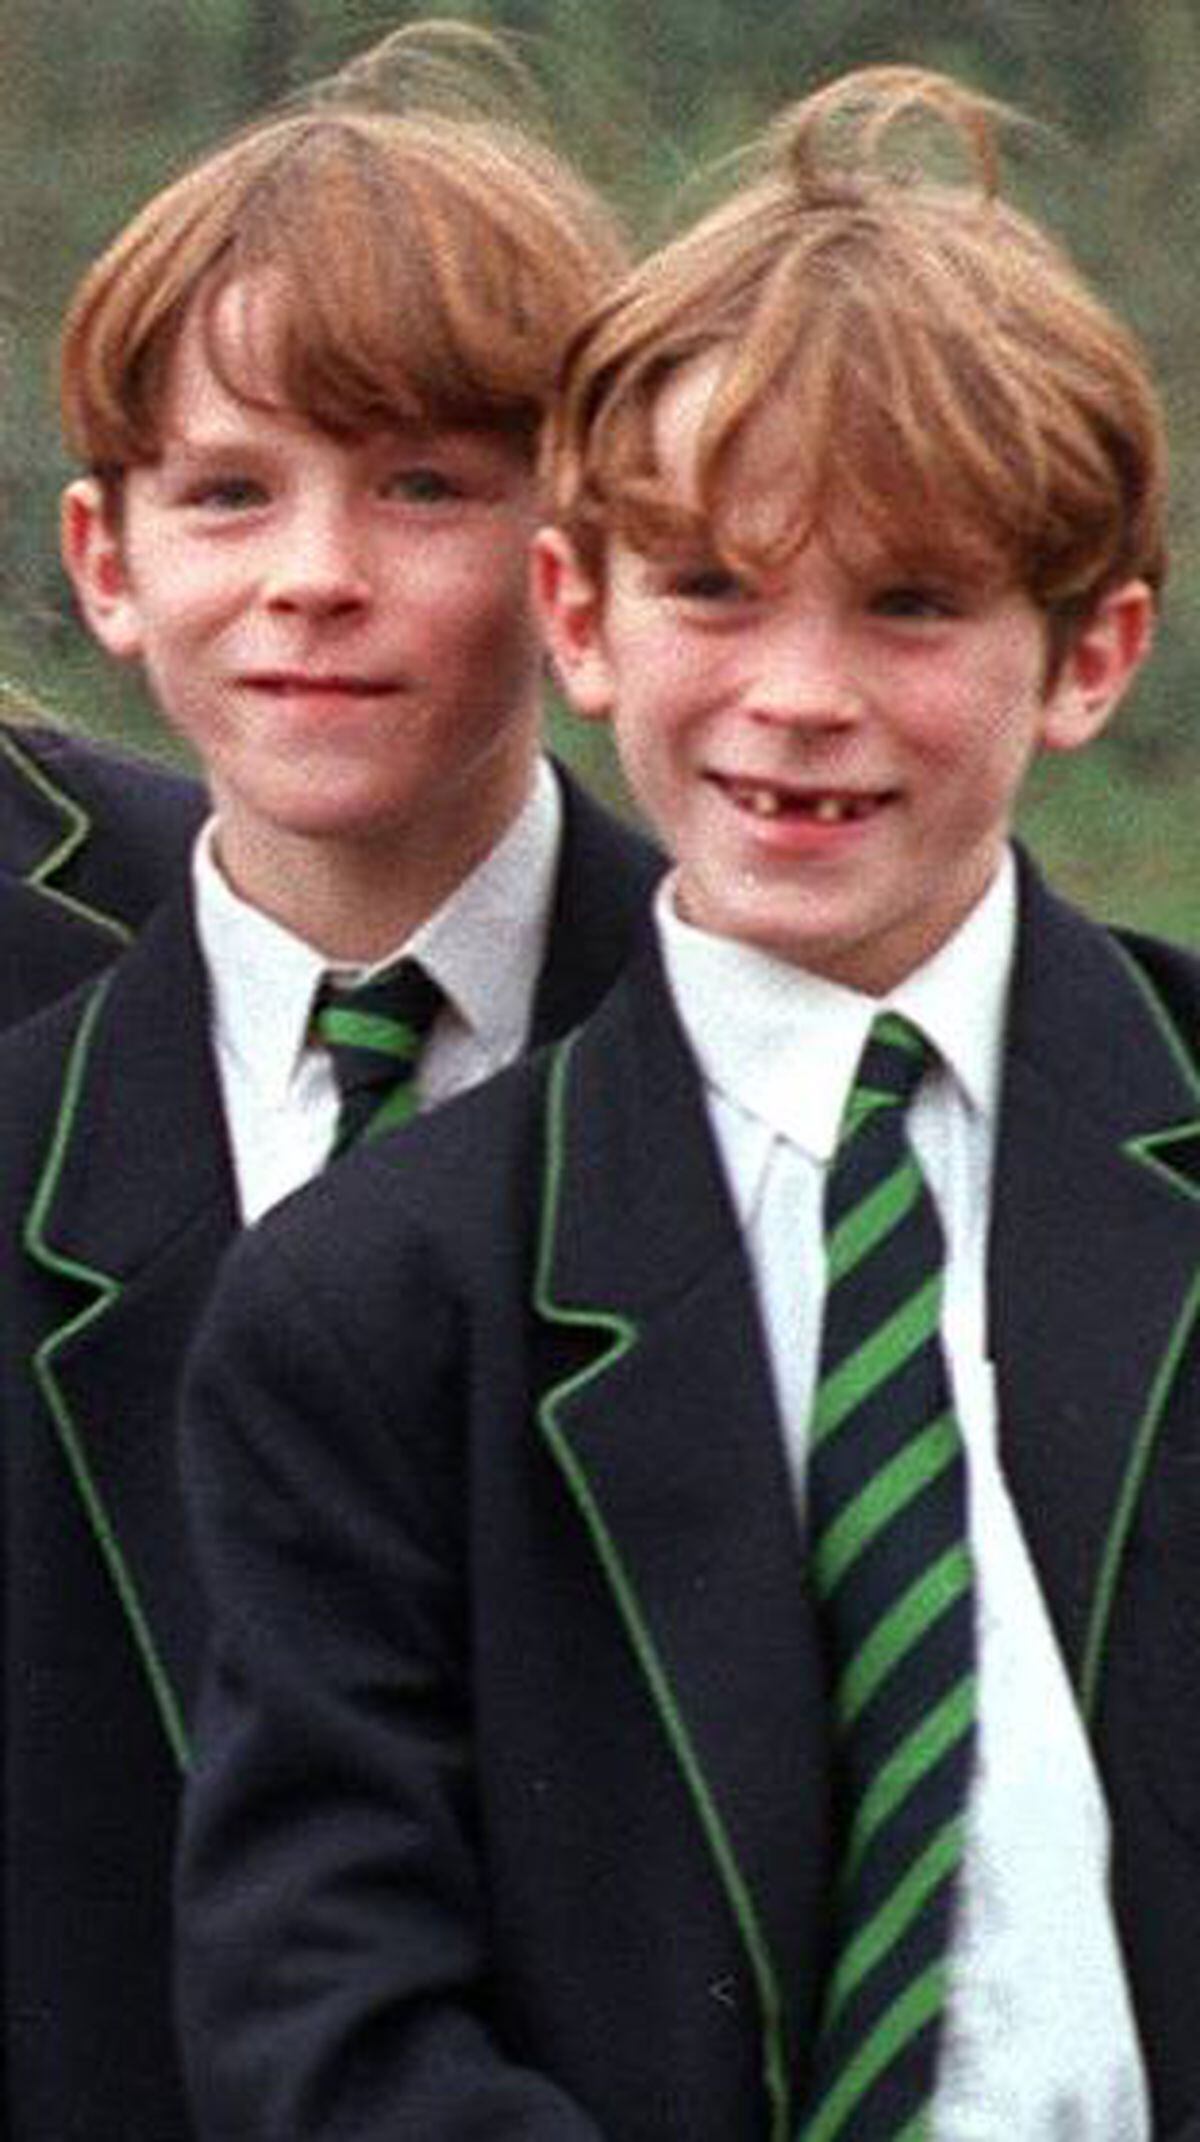 'Gummy Twins' John and Paul Jones in their schooldays